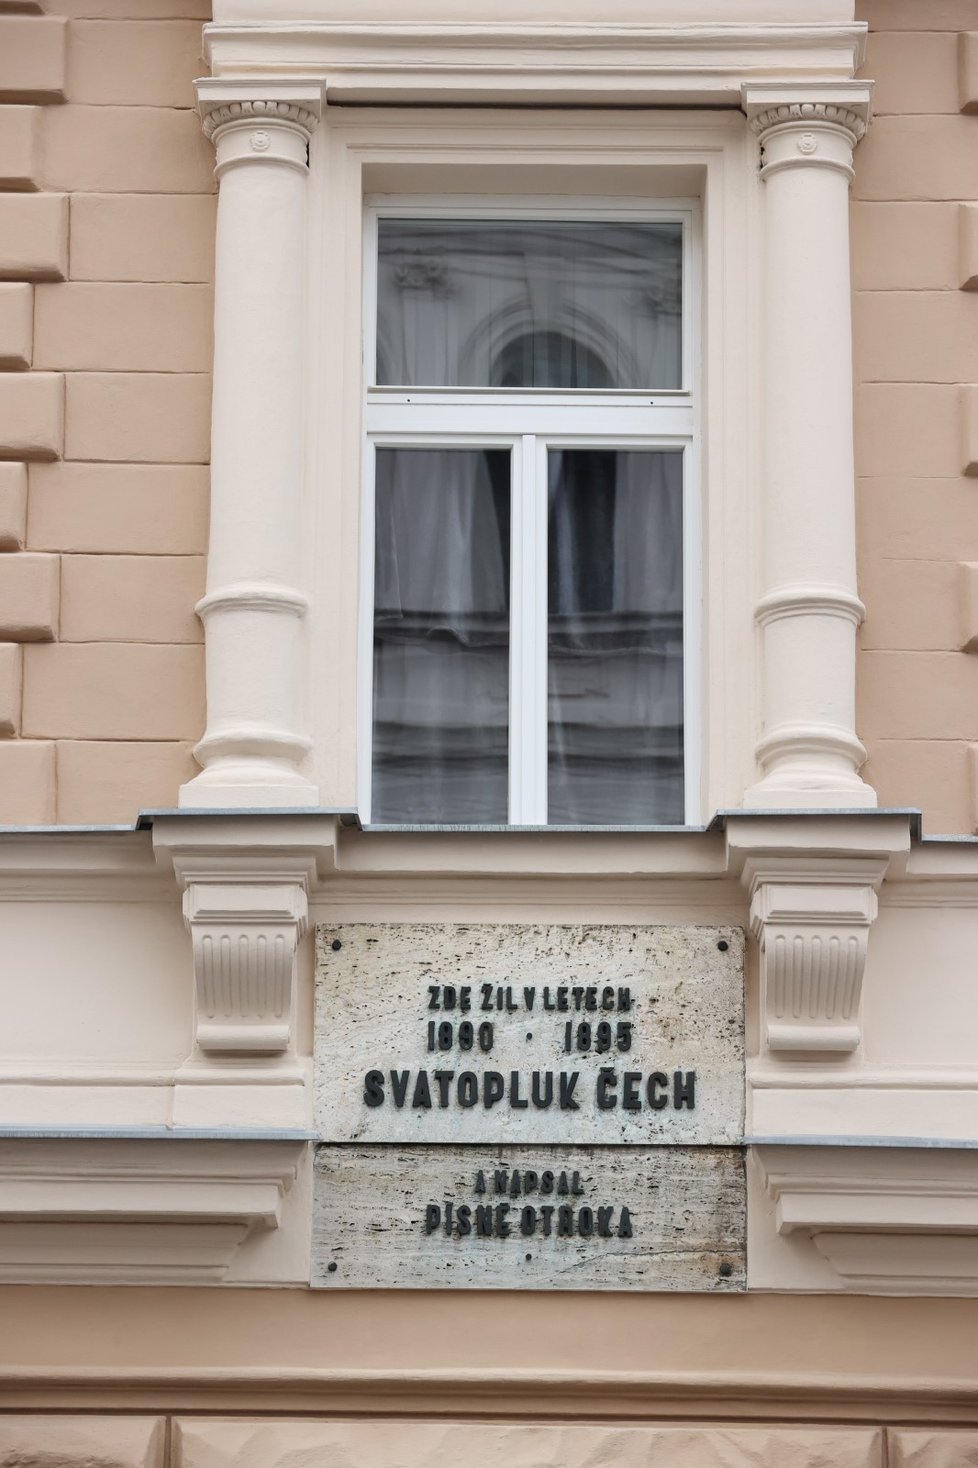 V tomto domě v Praze 7 žil krátce spisovatel Svatopluk Čech.